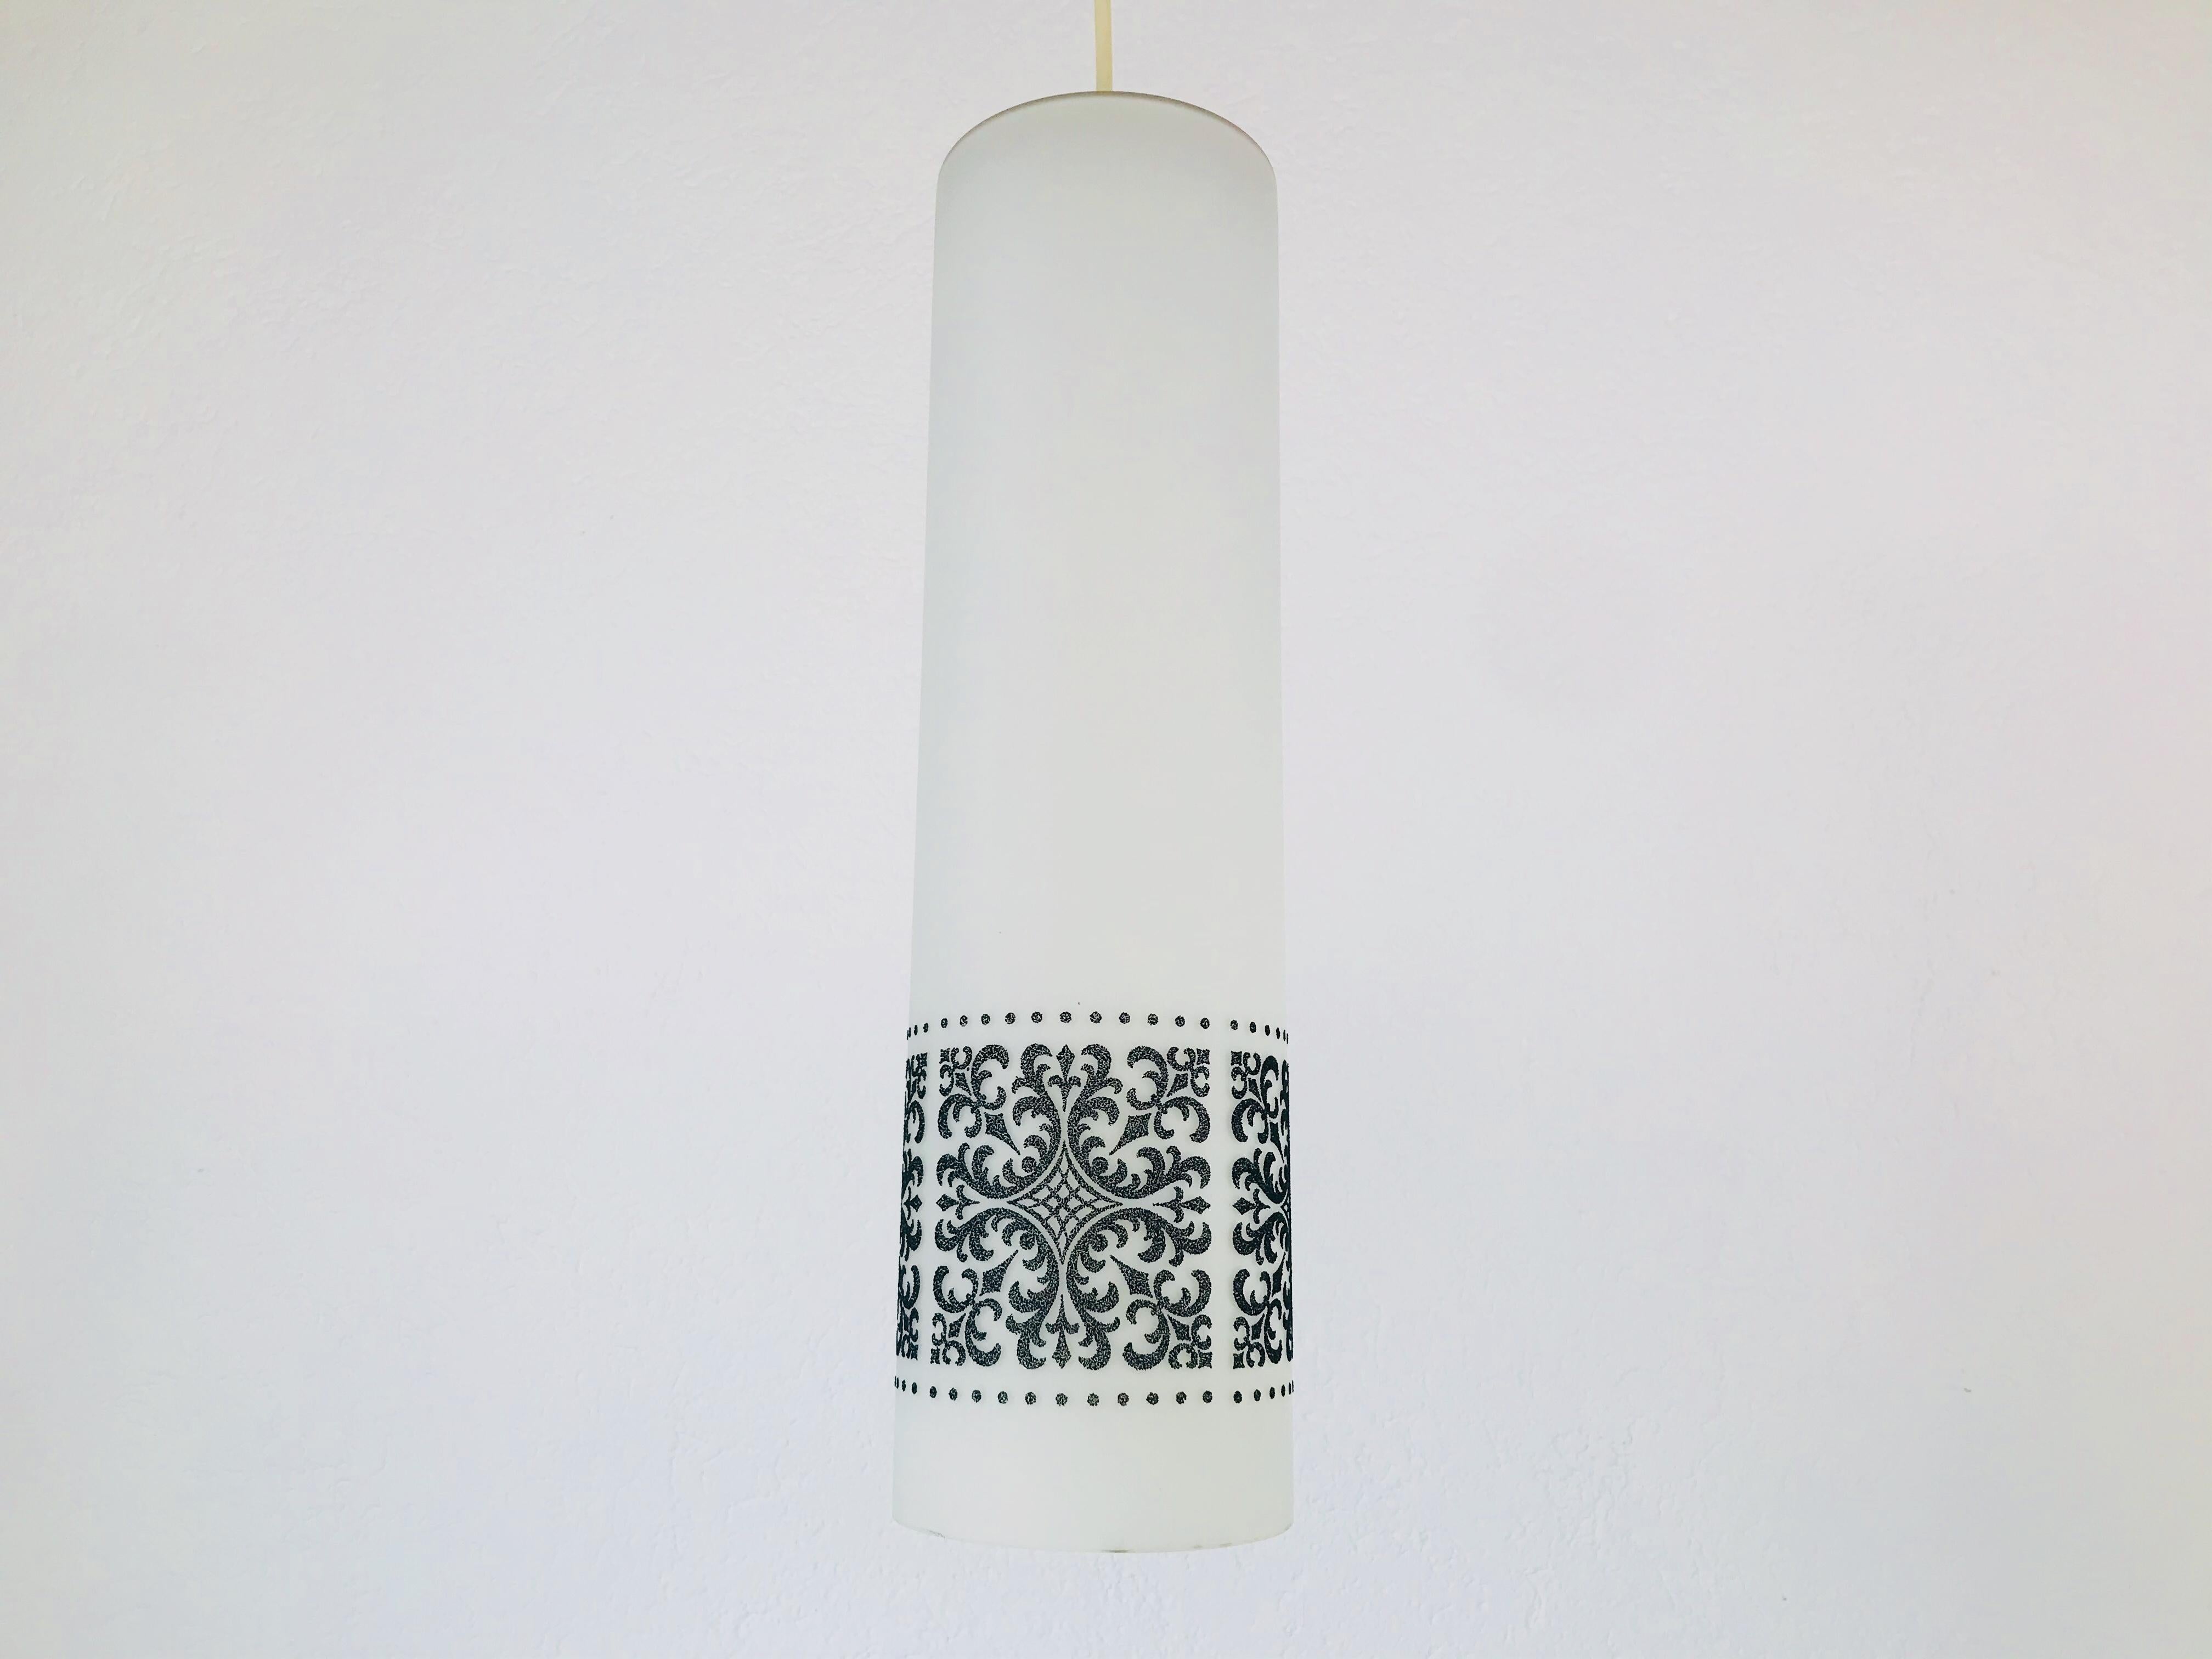 German Set of 3 Rare Opaline Glass Pendant Lamps by Glashütte Limburg, 1960s For Sale